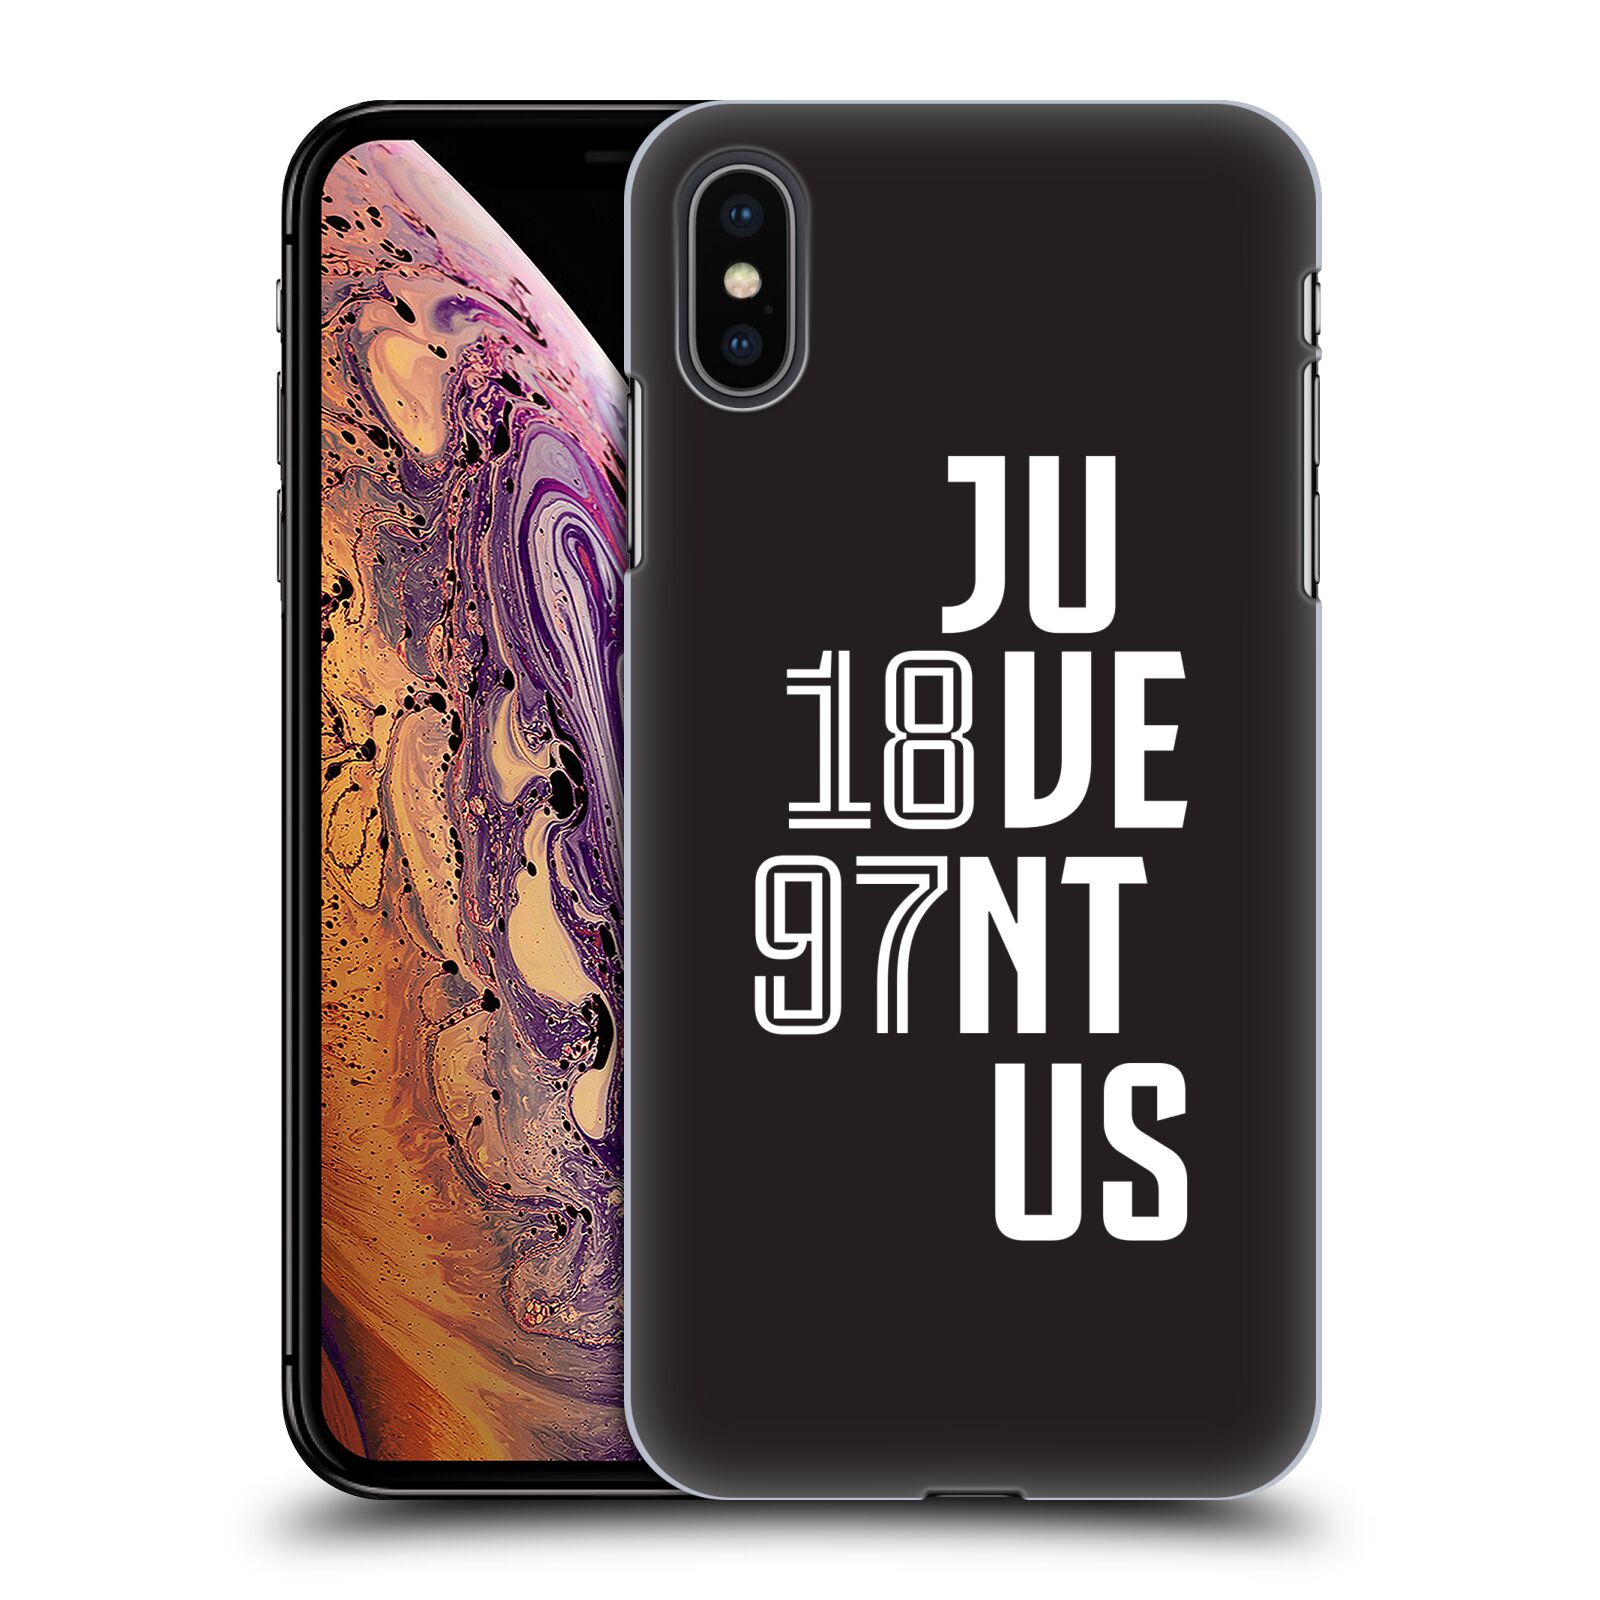 Zadní obal pro mobil Apple Iphone XS MAX - HEAD CASE - Fotbalový klub Juventus - Velké písmo